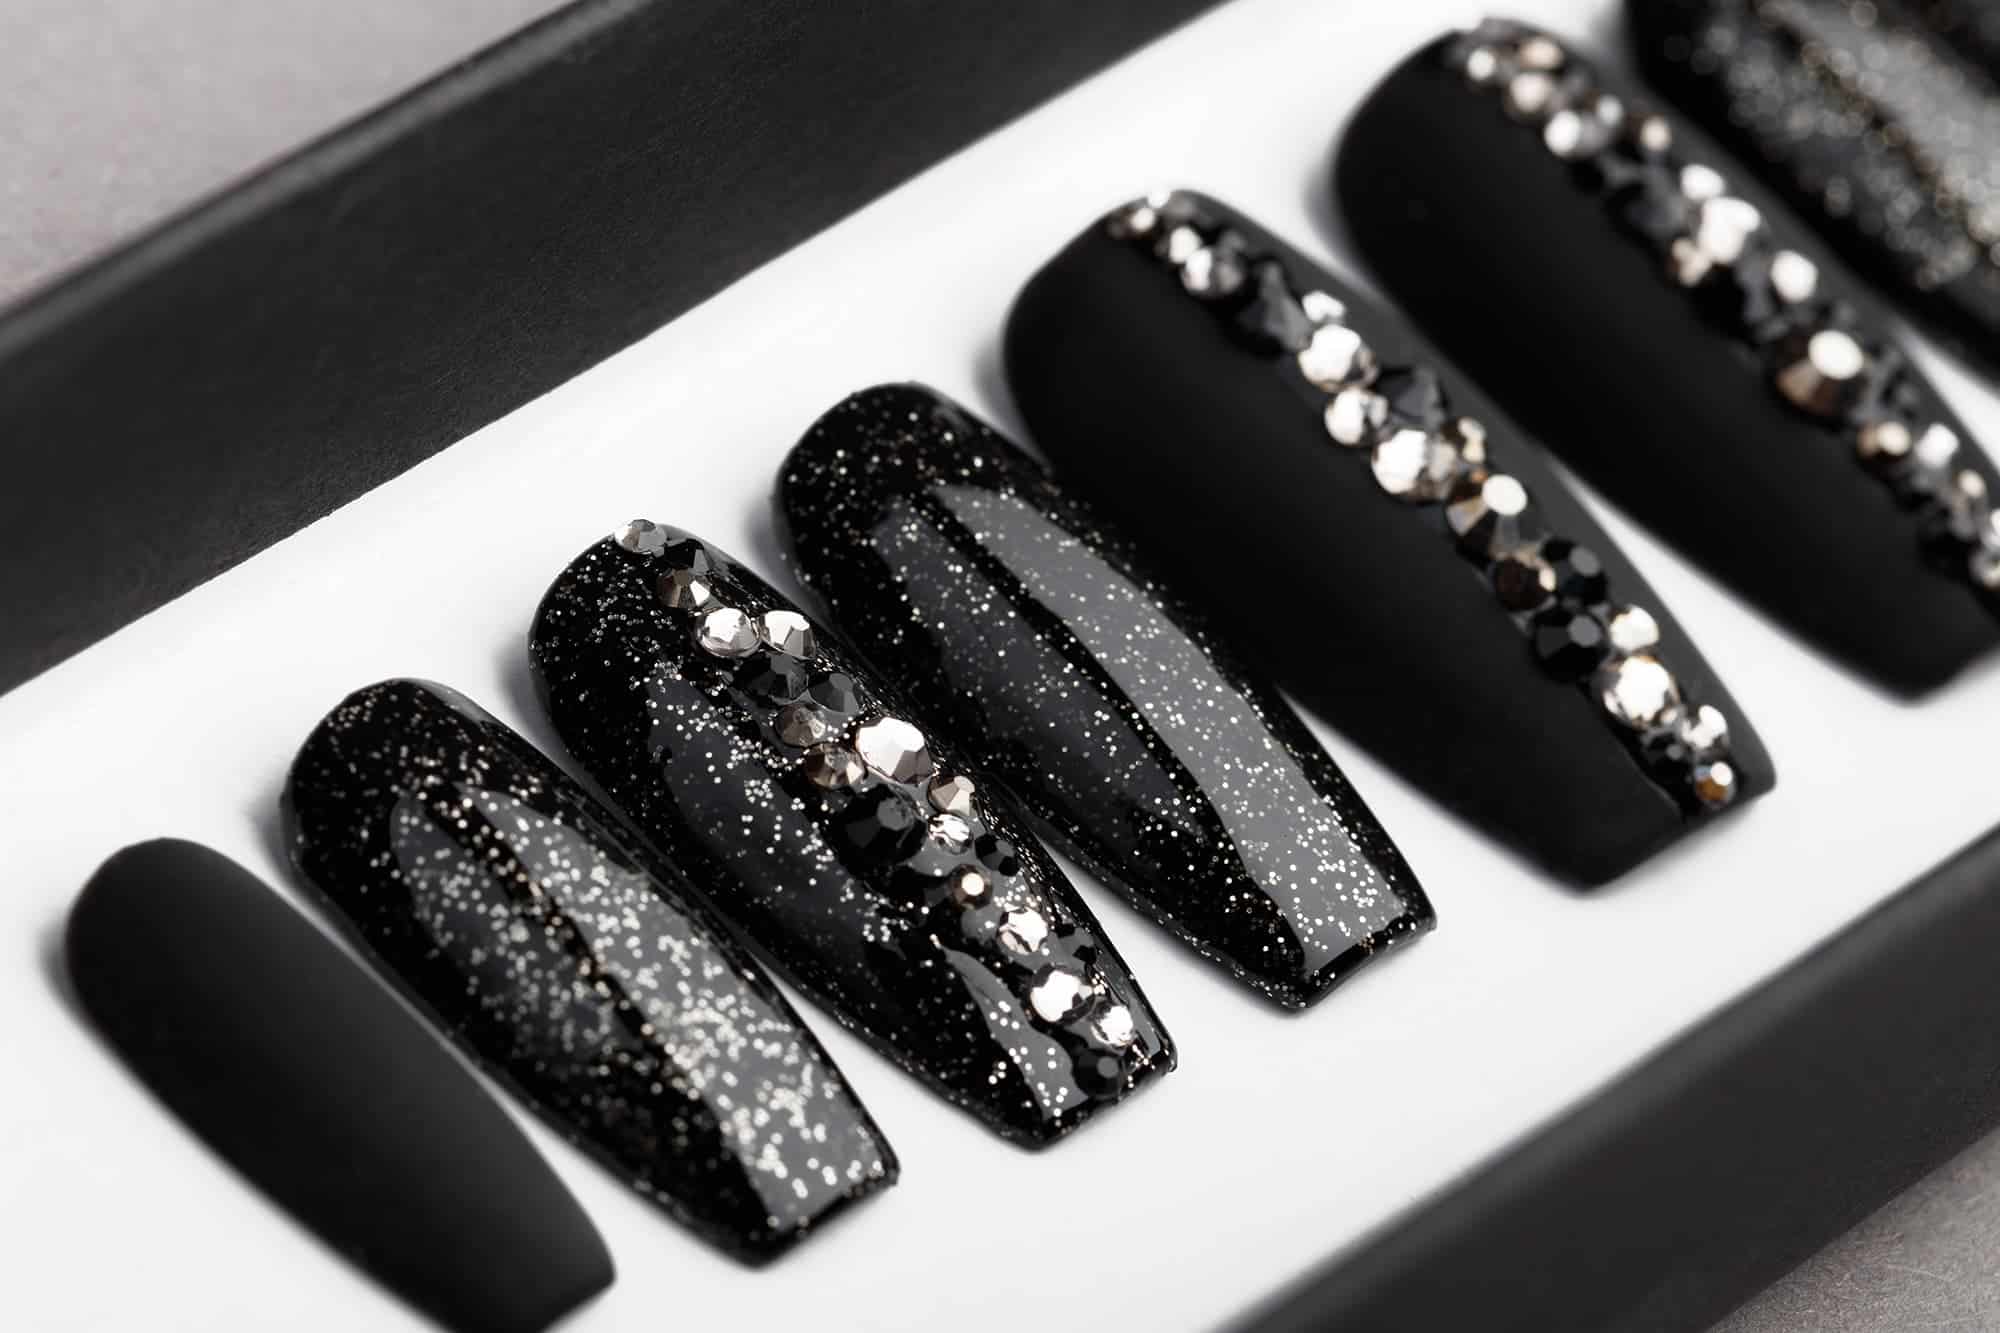 Black Abstract Press On Nails with Swarovski crystals | Hand painted Nail Art | Fake Nails | False Nails | Rhinestones